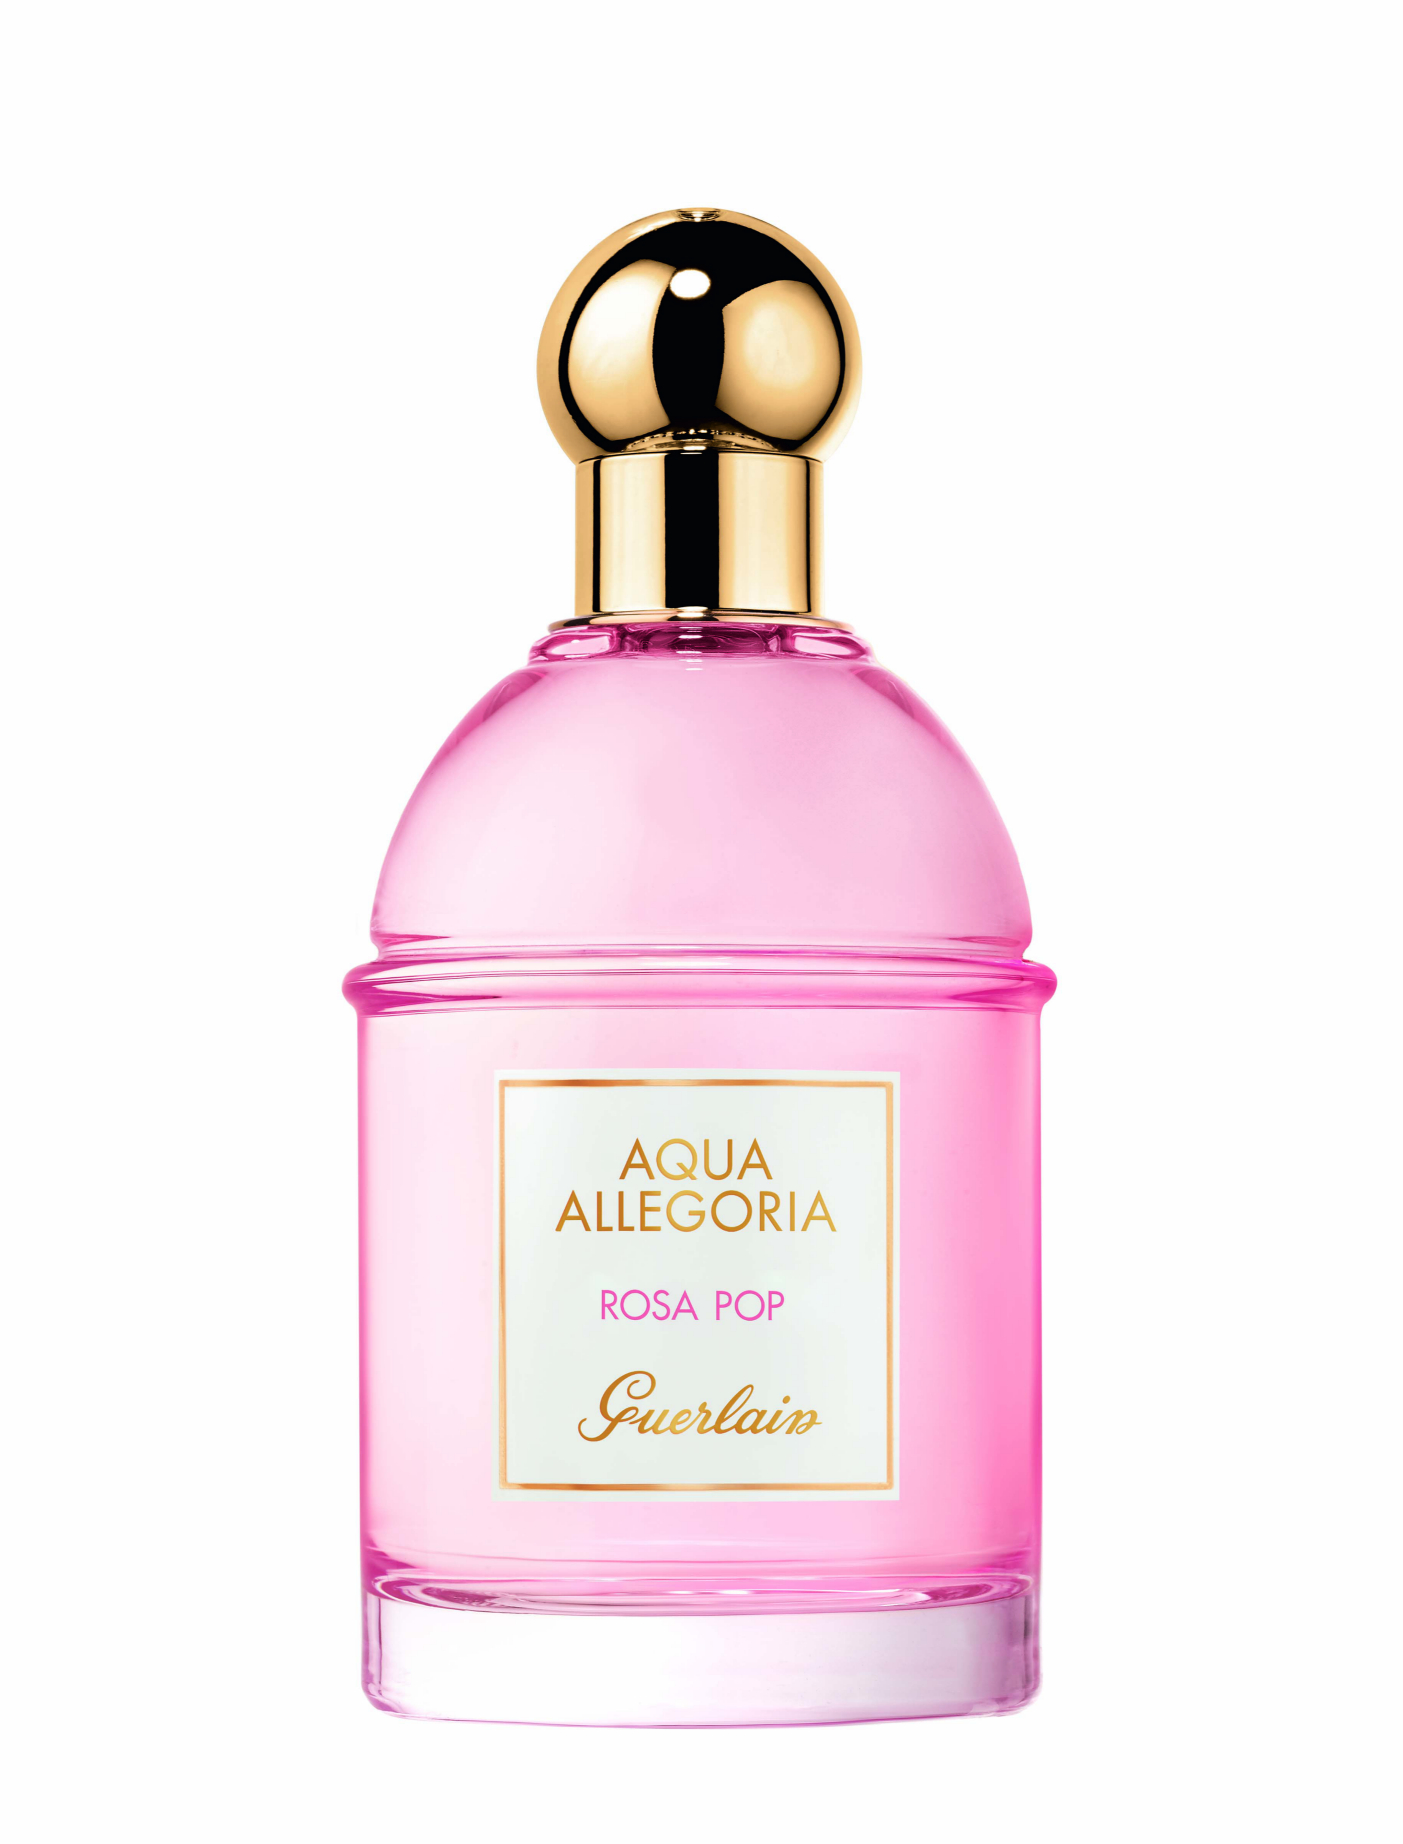 Aqua Allegoria Rosa Pop